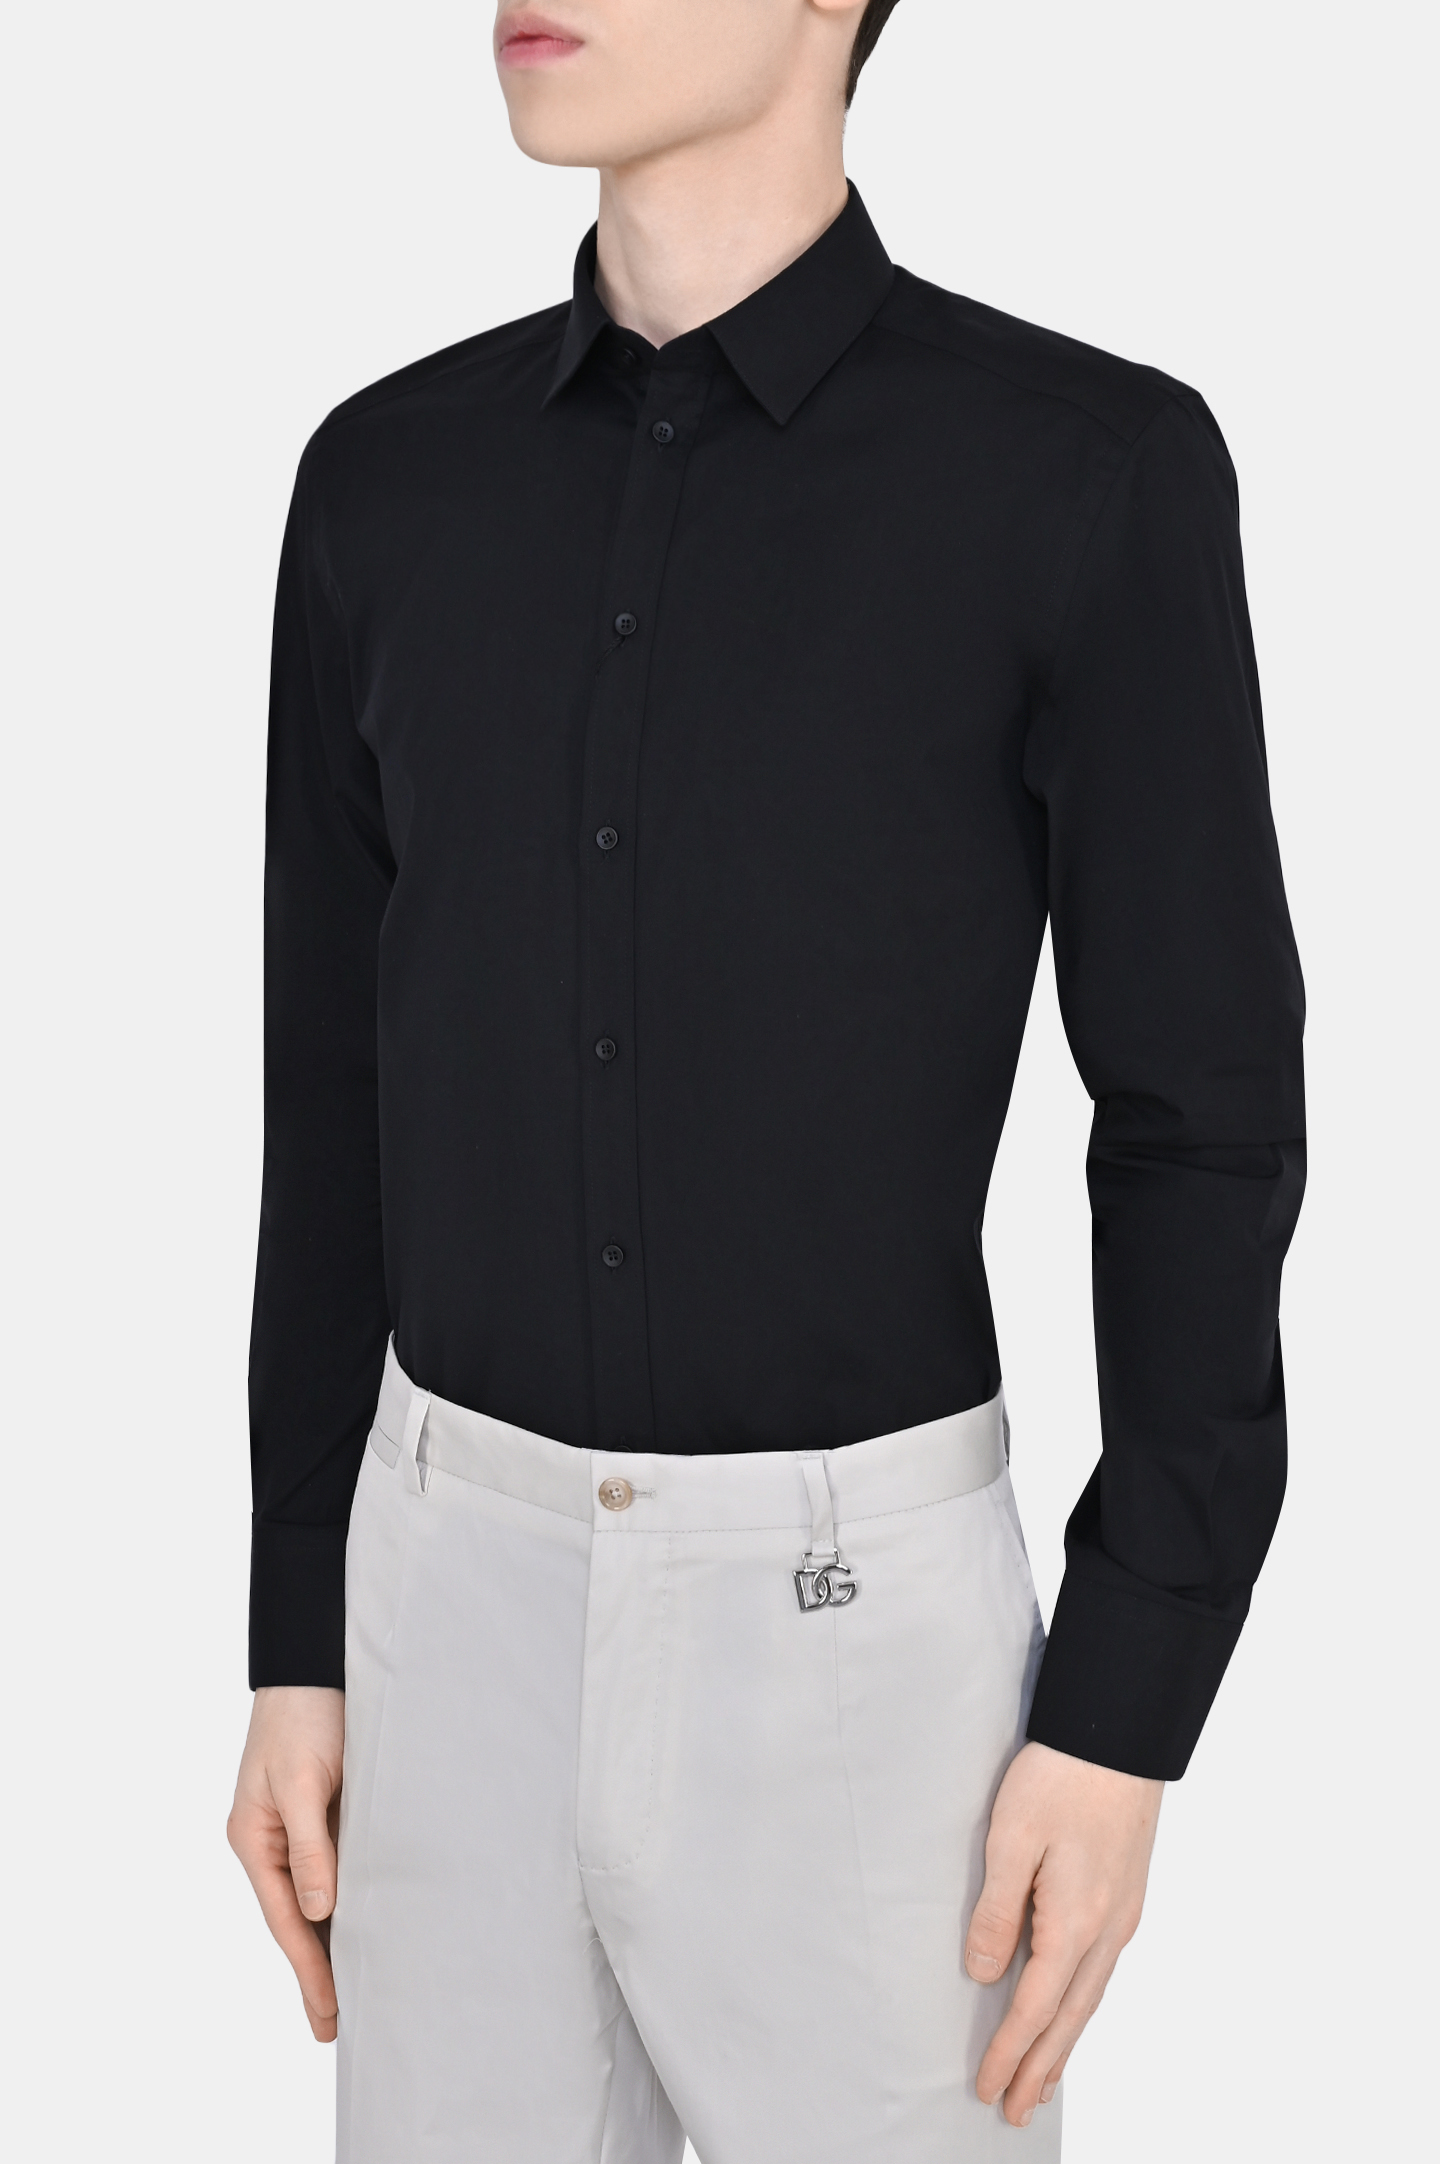 Рубашка DOLCE & GABBANA G5EJ0T FUEEE, цвет: Черный, Мужской